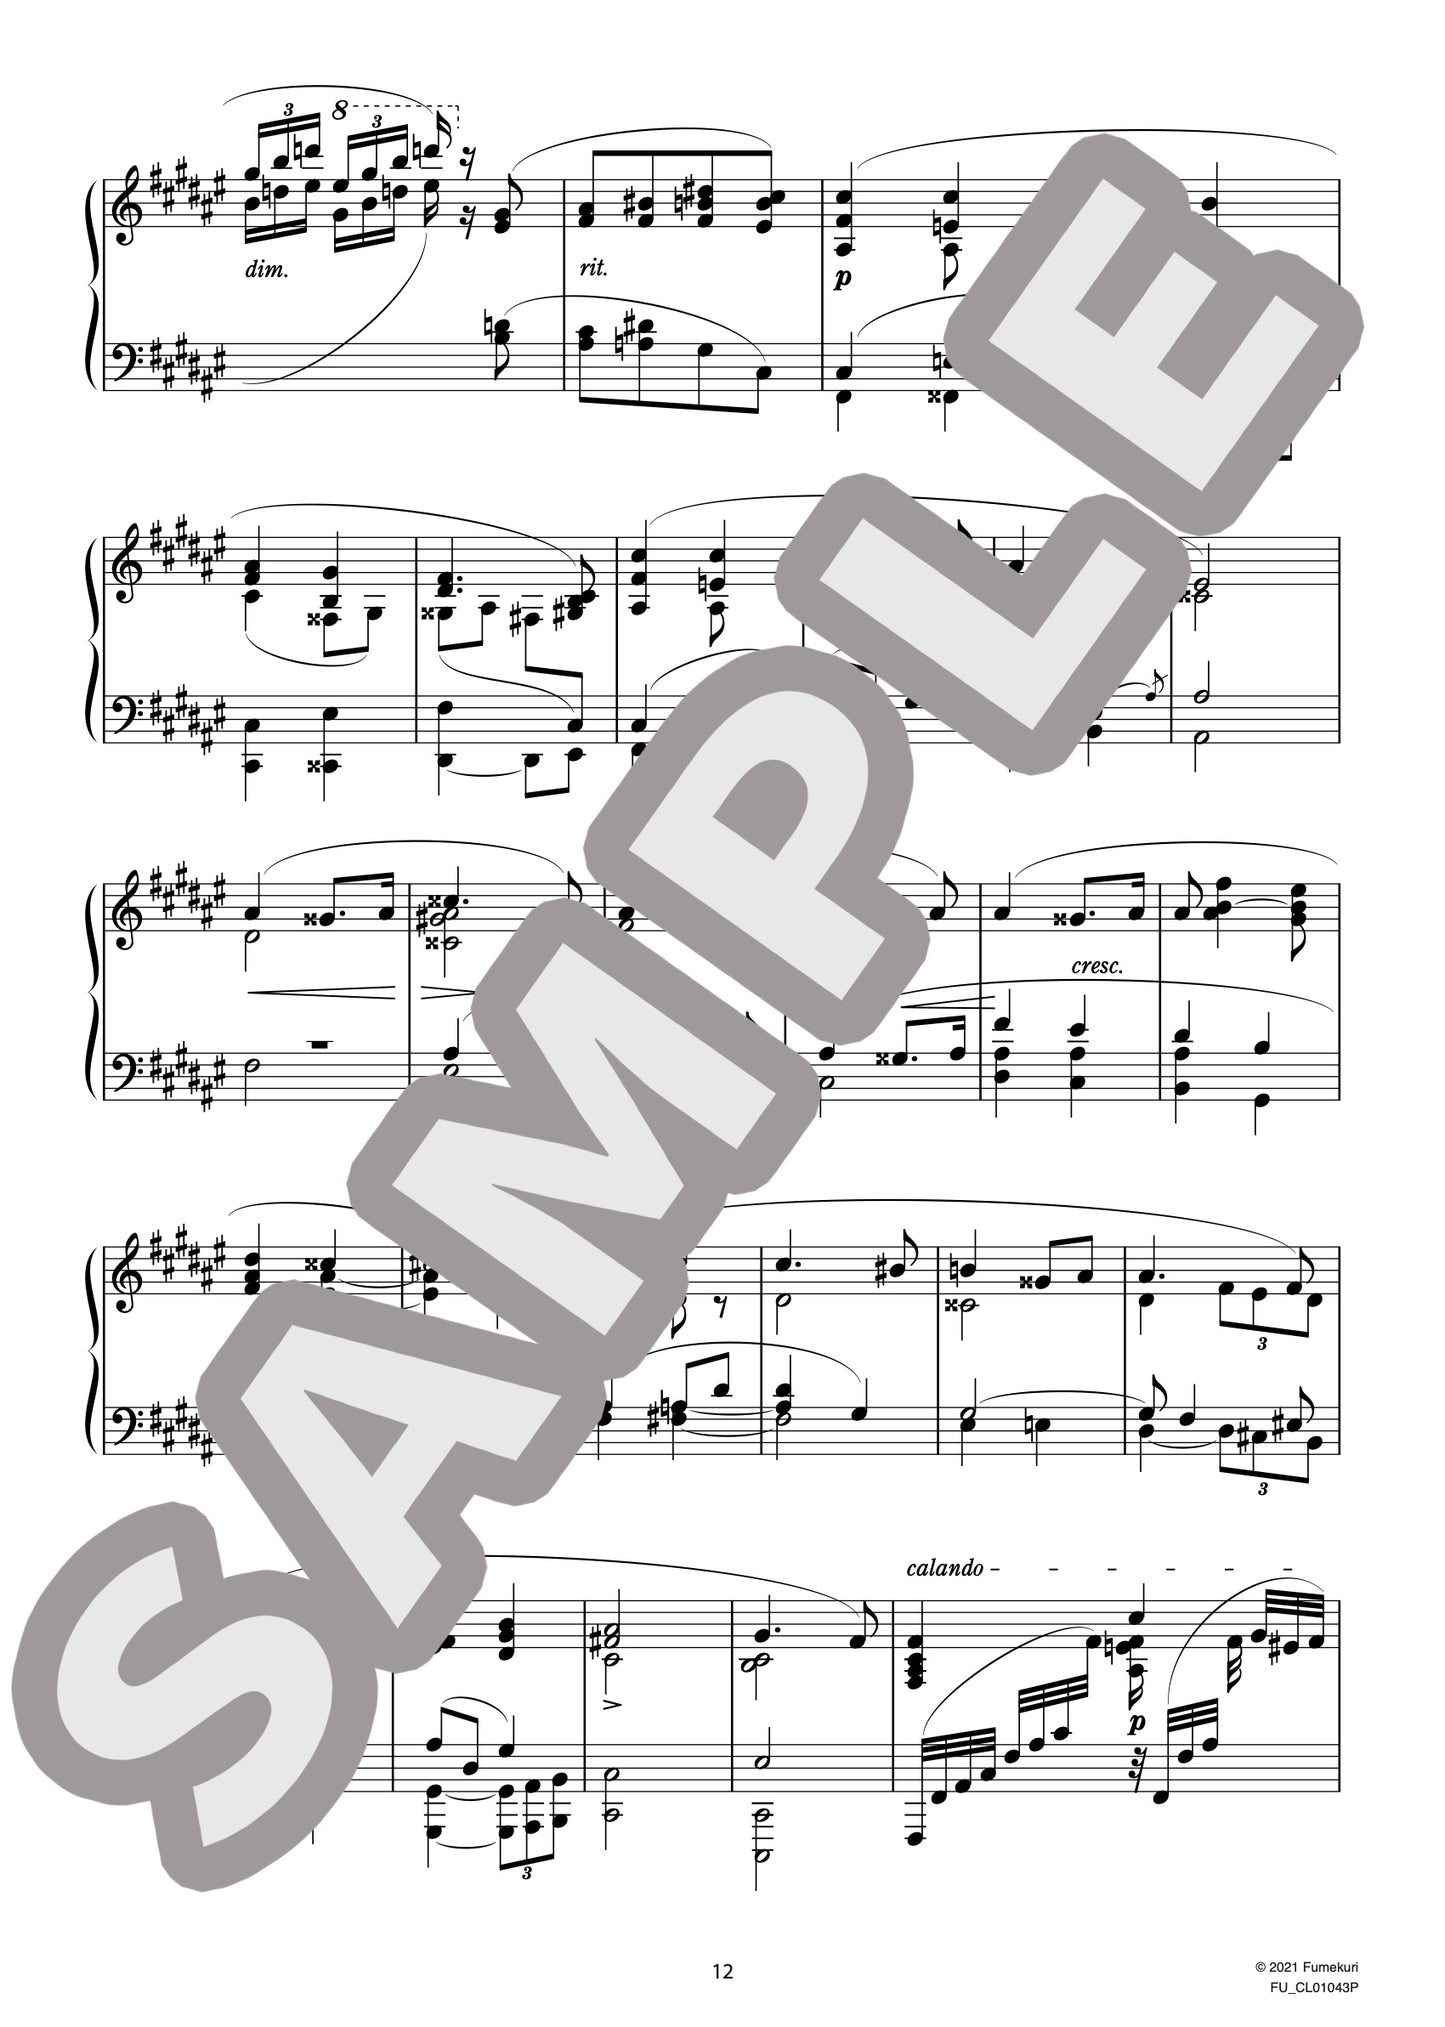 ロベルト・シューマンの主題による変奏曲 作品20（CLARA.S) / クラシック・オリジナル楽曲【中上級】